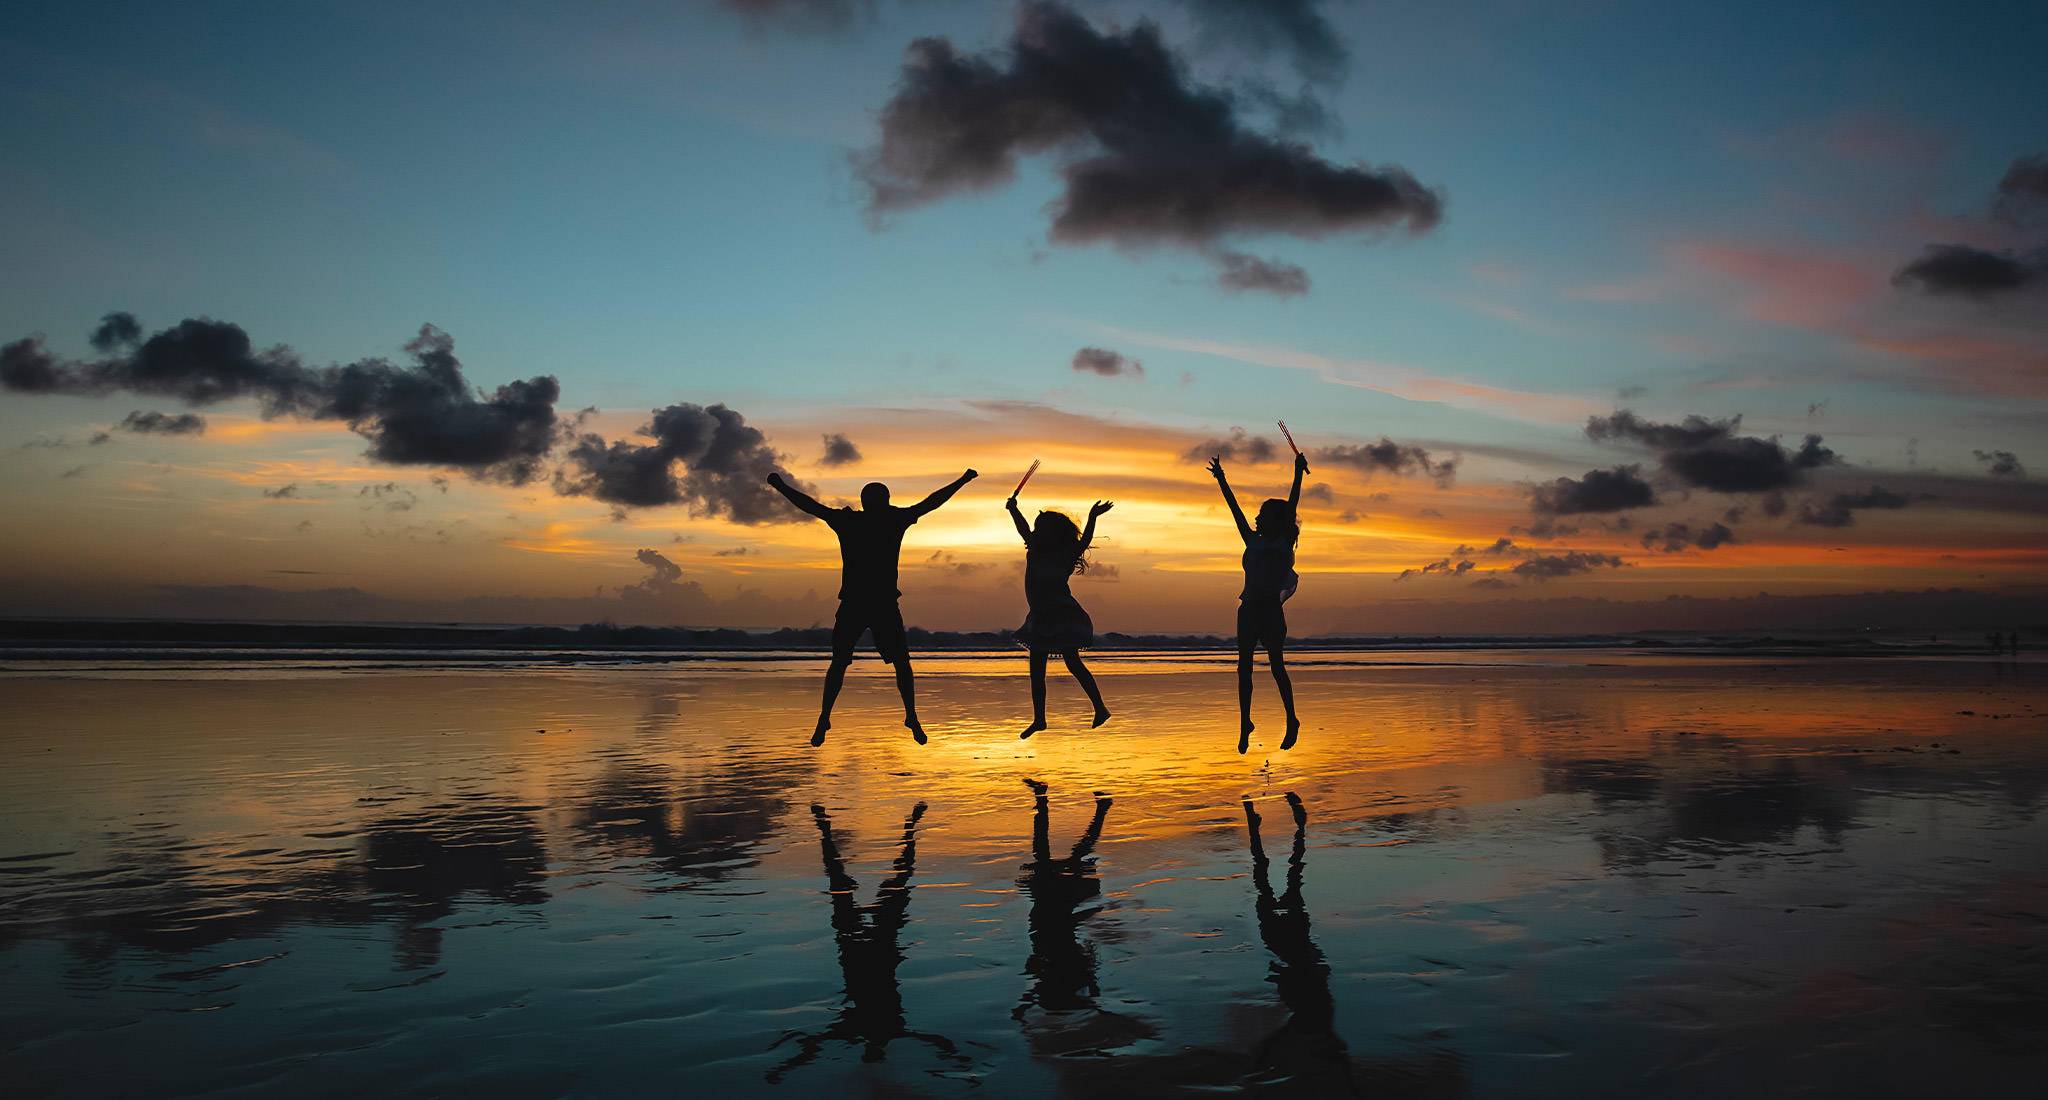 Silhouette von drei Menschen springend in der Luft am Strand während des Sonnenuntergangs.